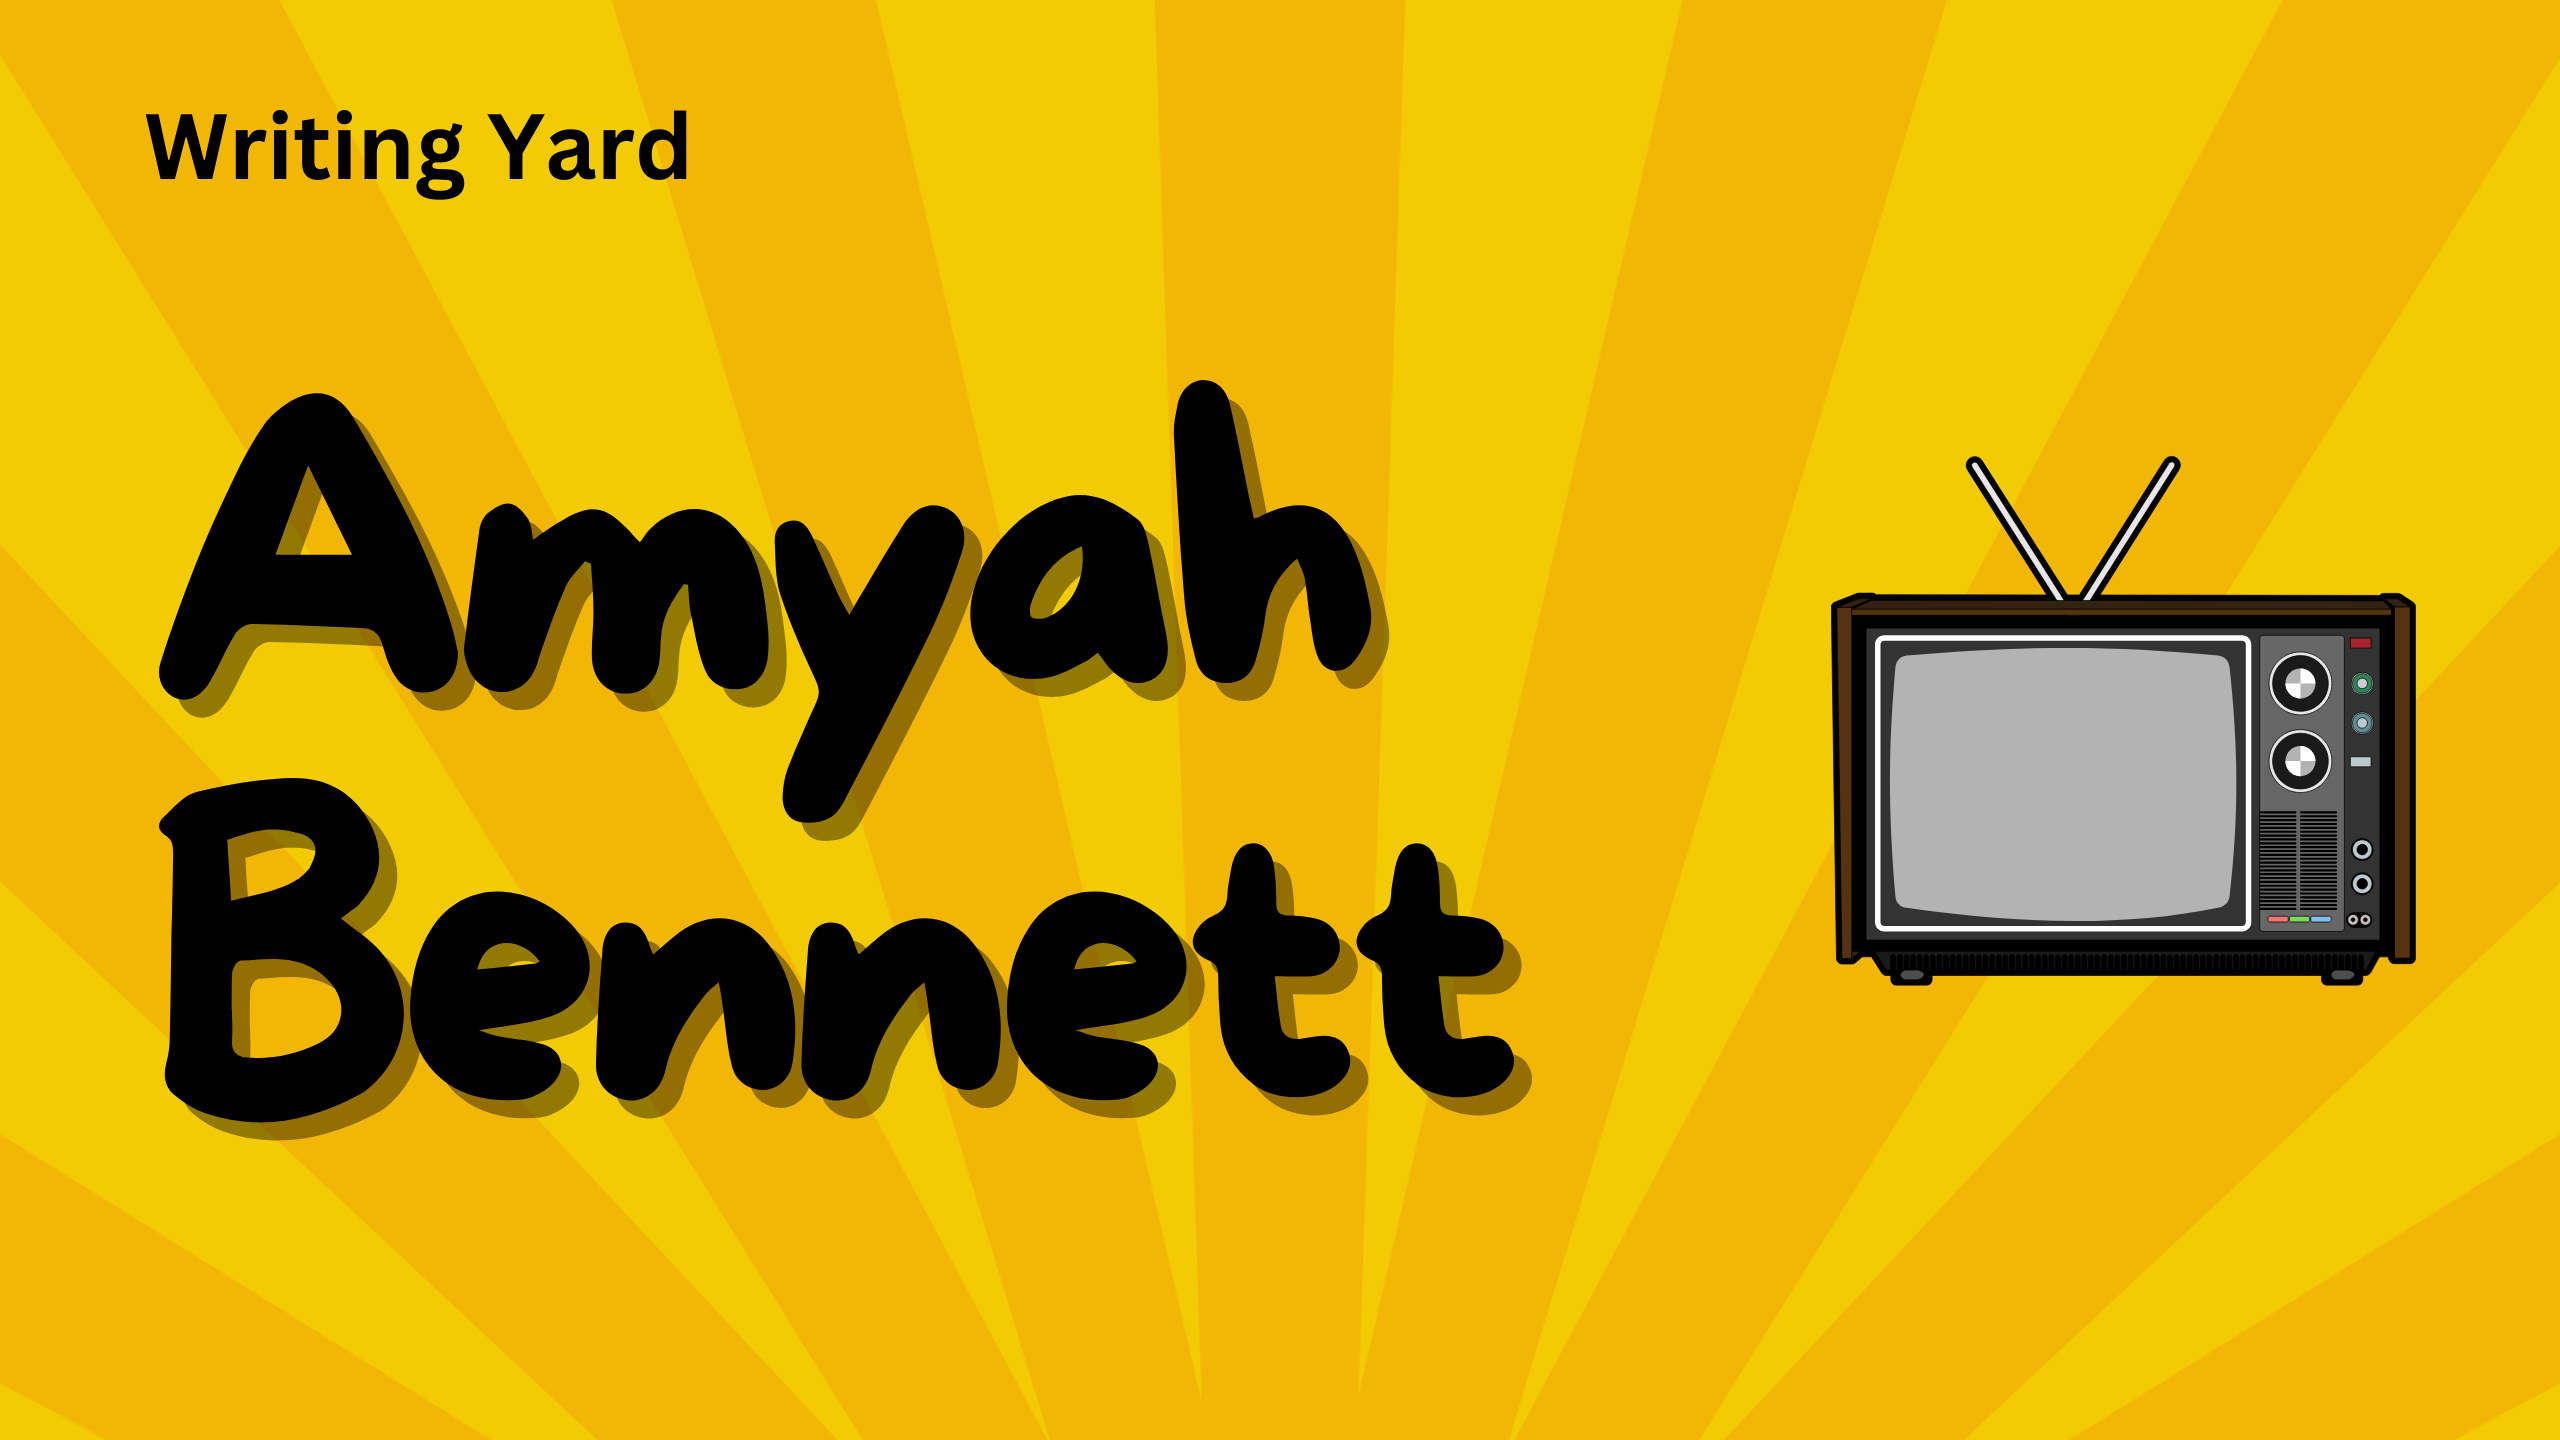 Amyah Bennett